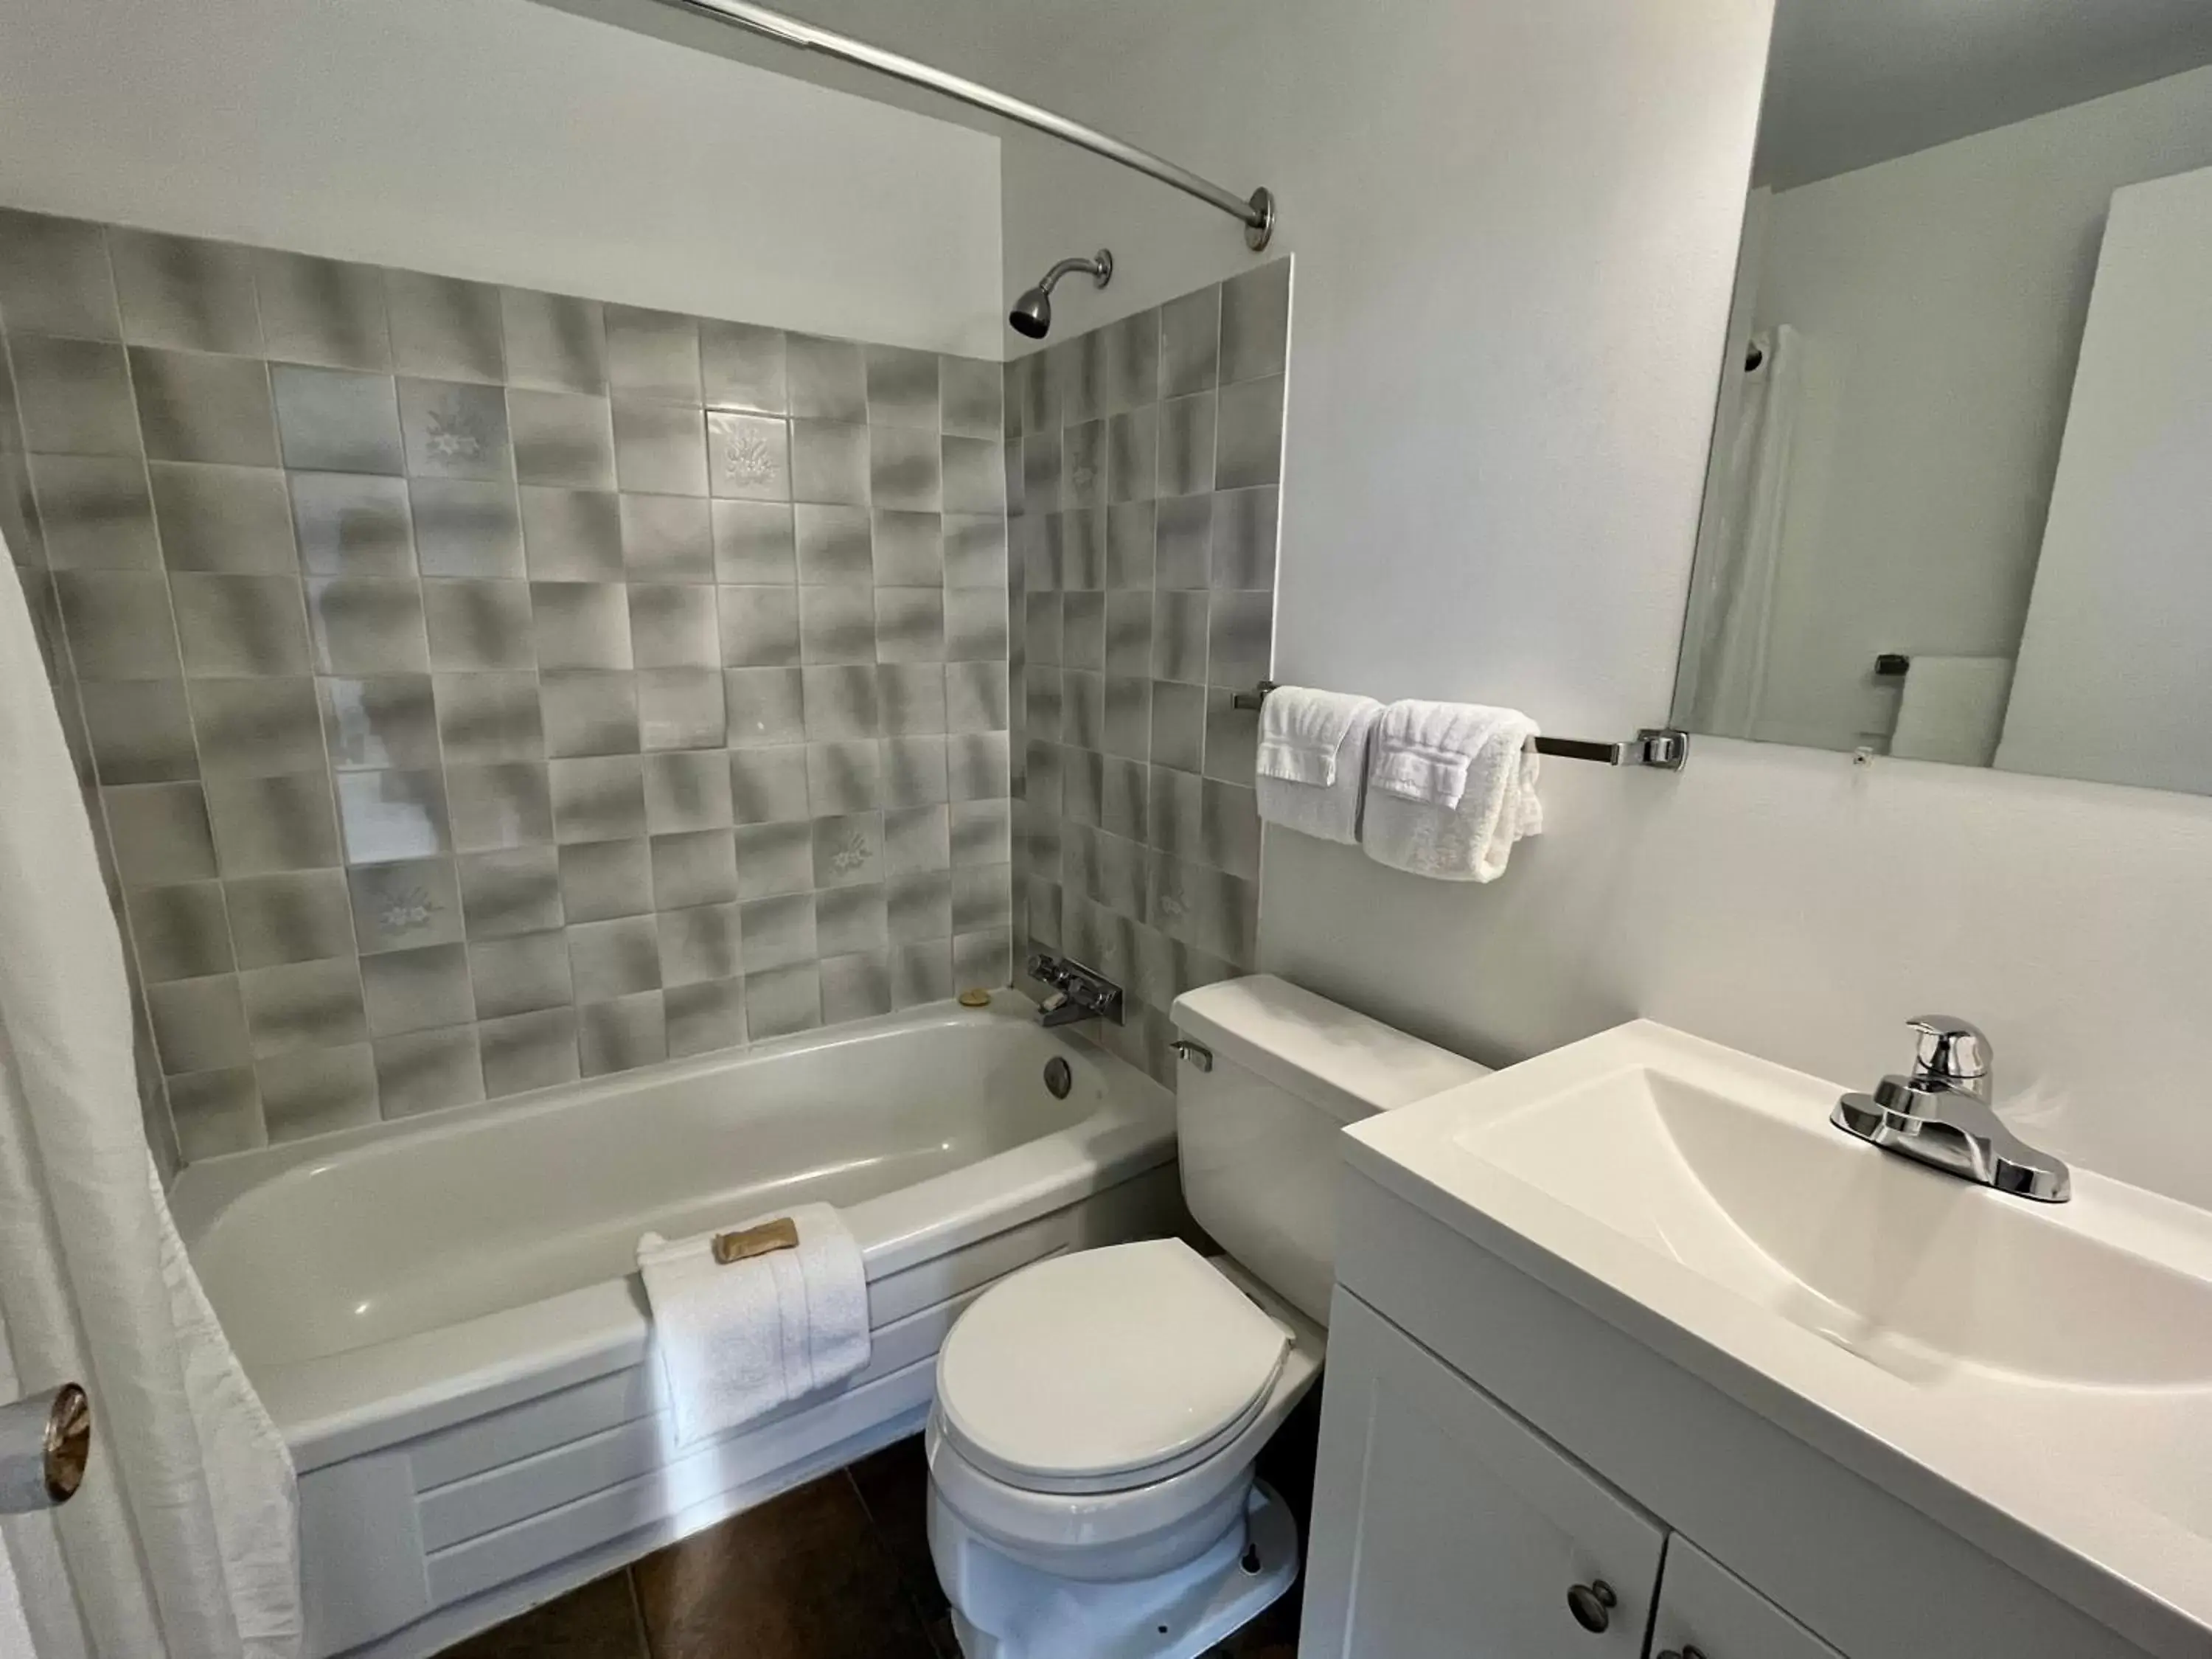 Bathroom in Anavada Inn & Suites - Prince George